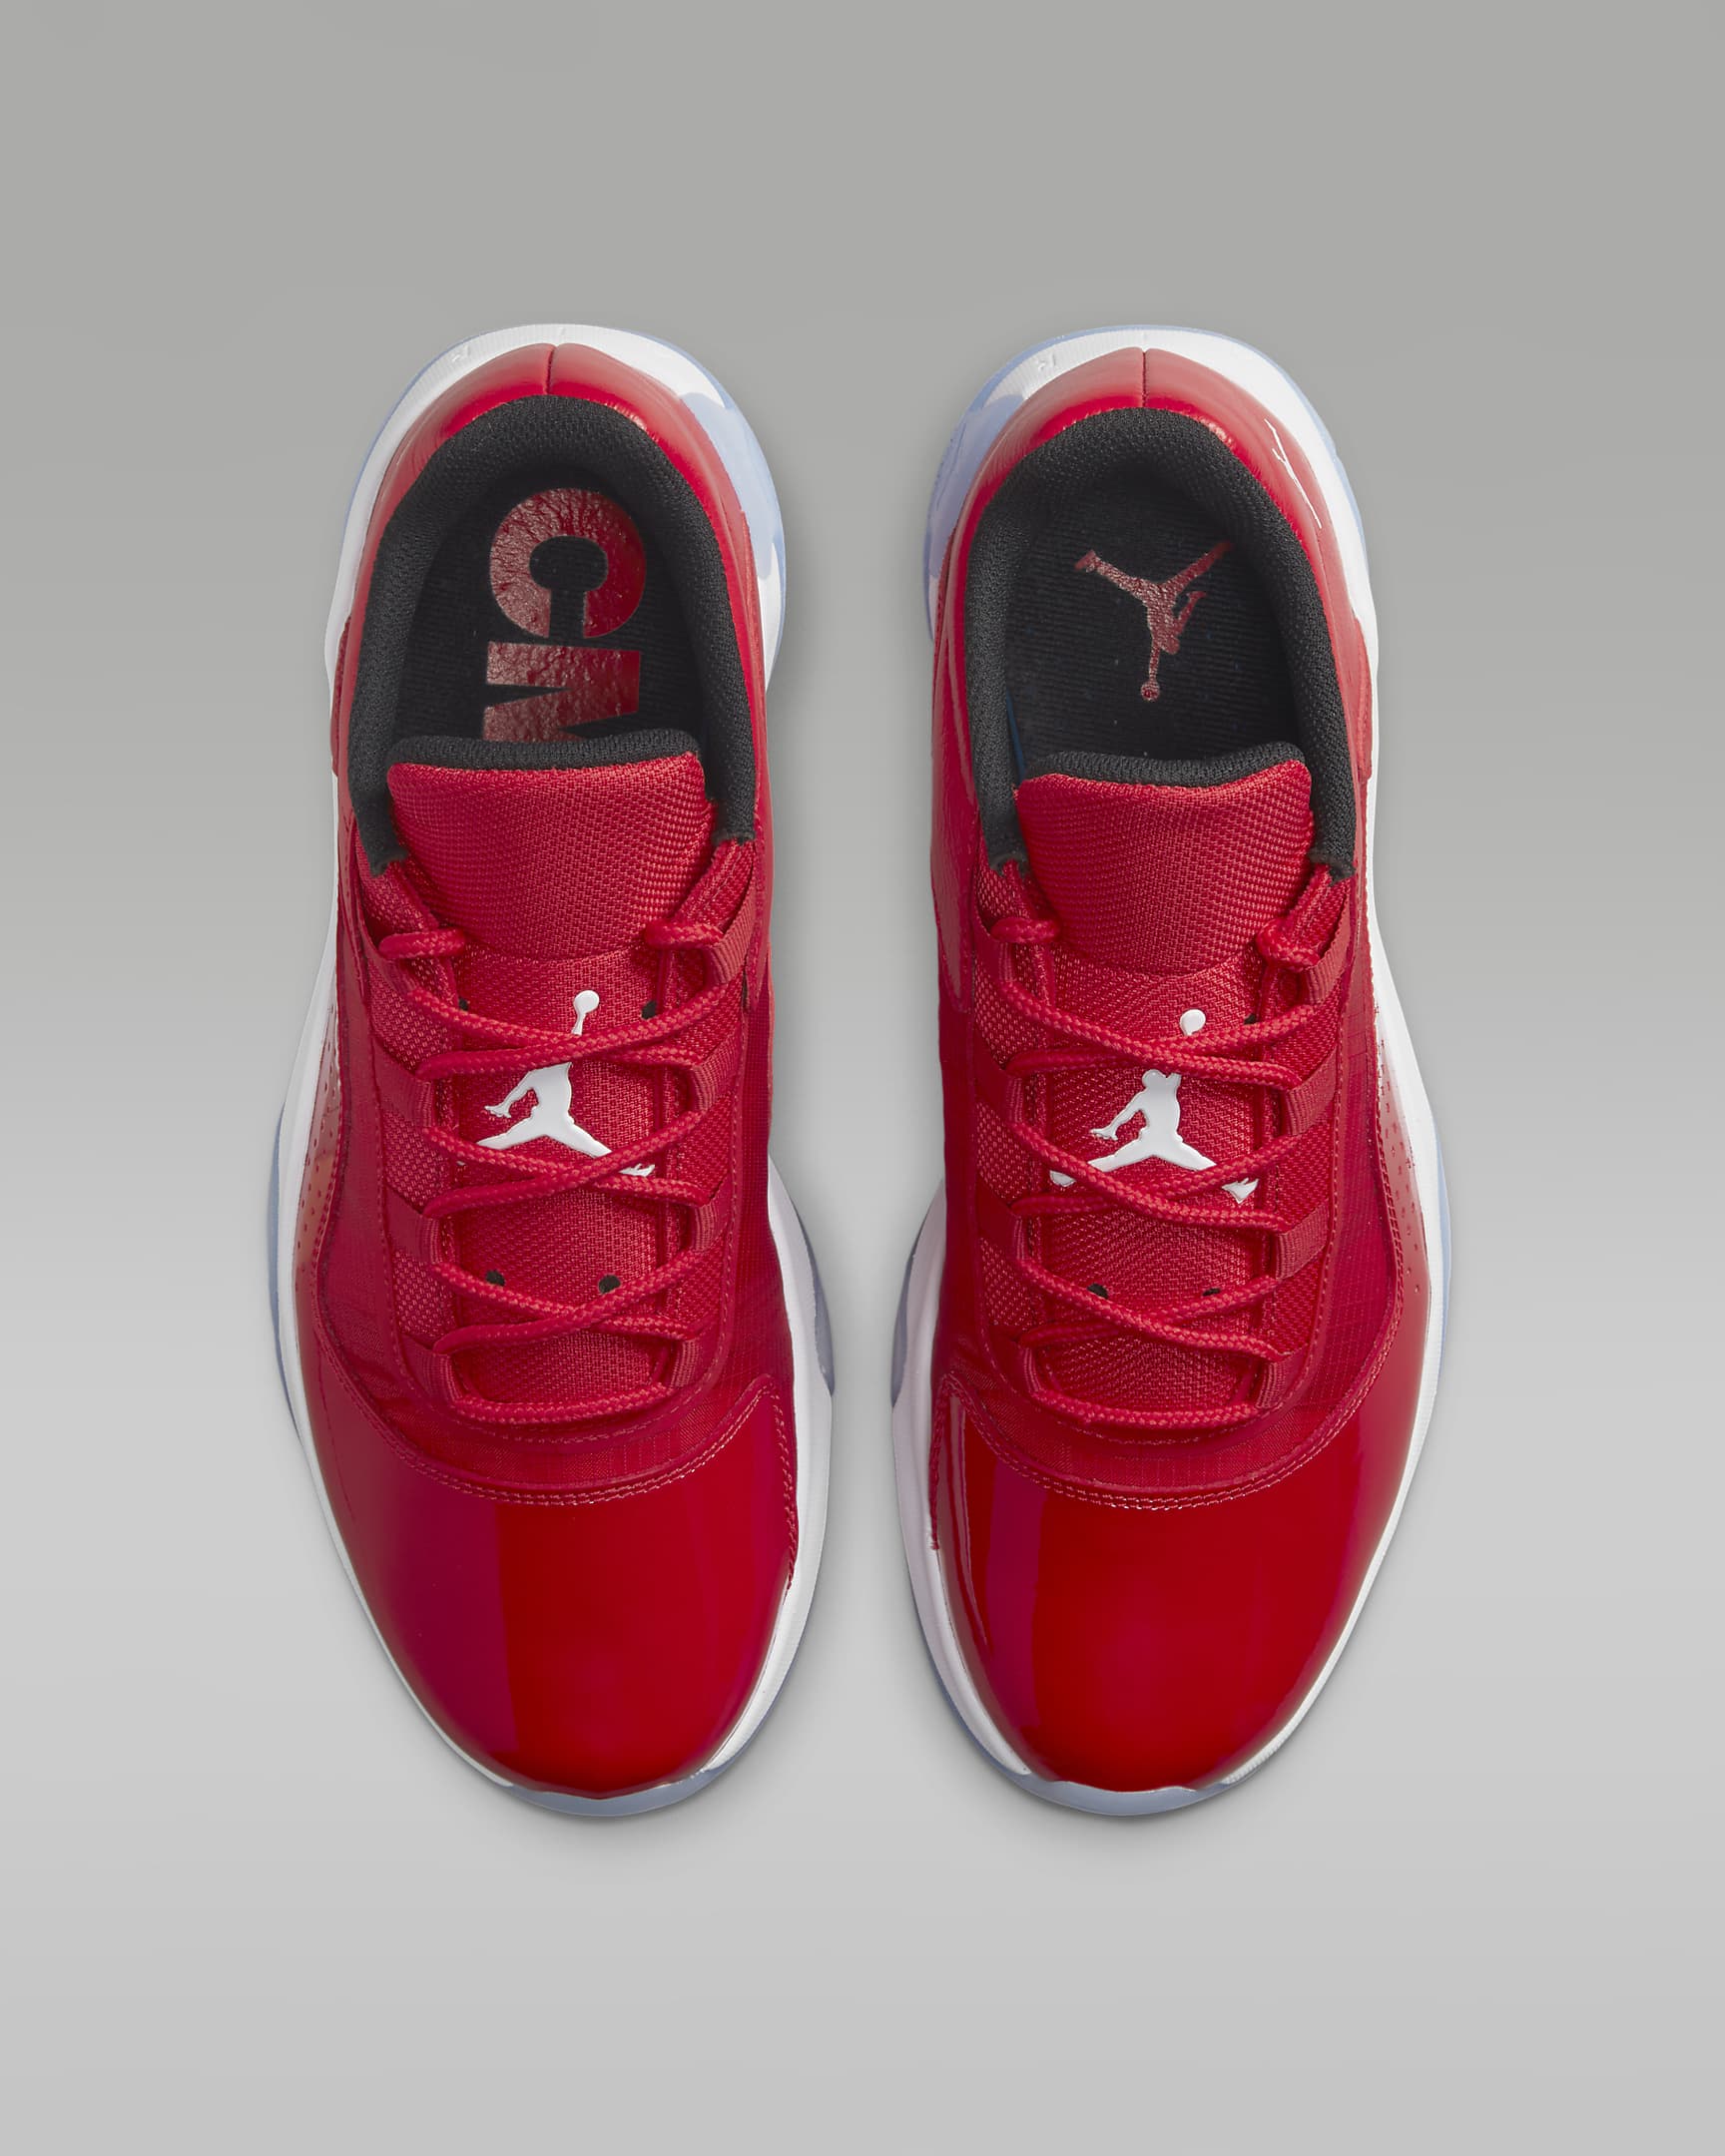 Air Jordan 11 CMFT Low Men's Shoes. Nike DK